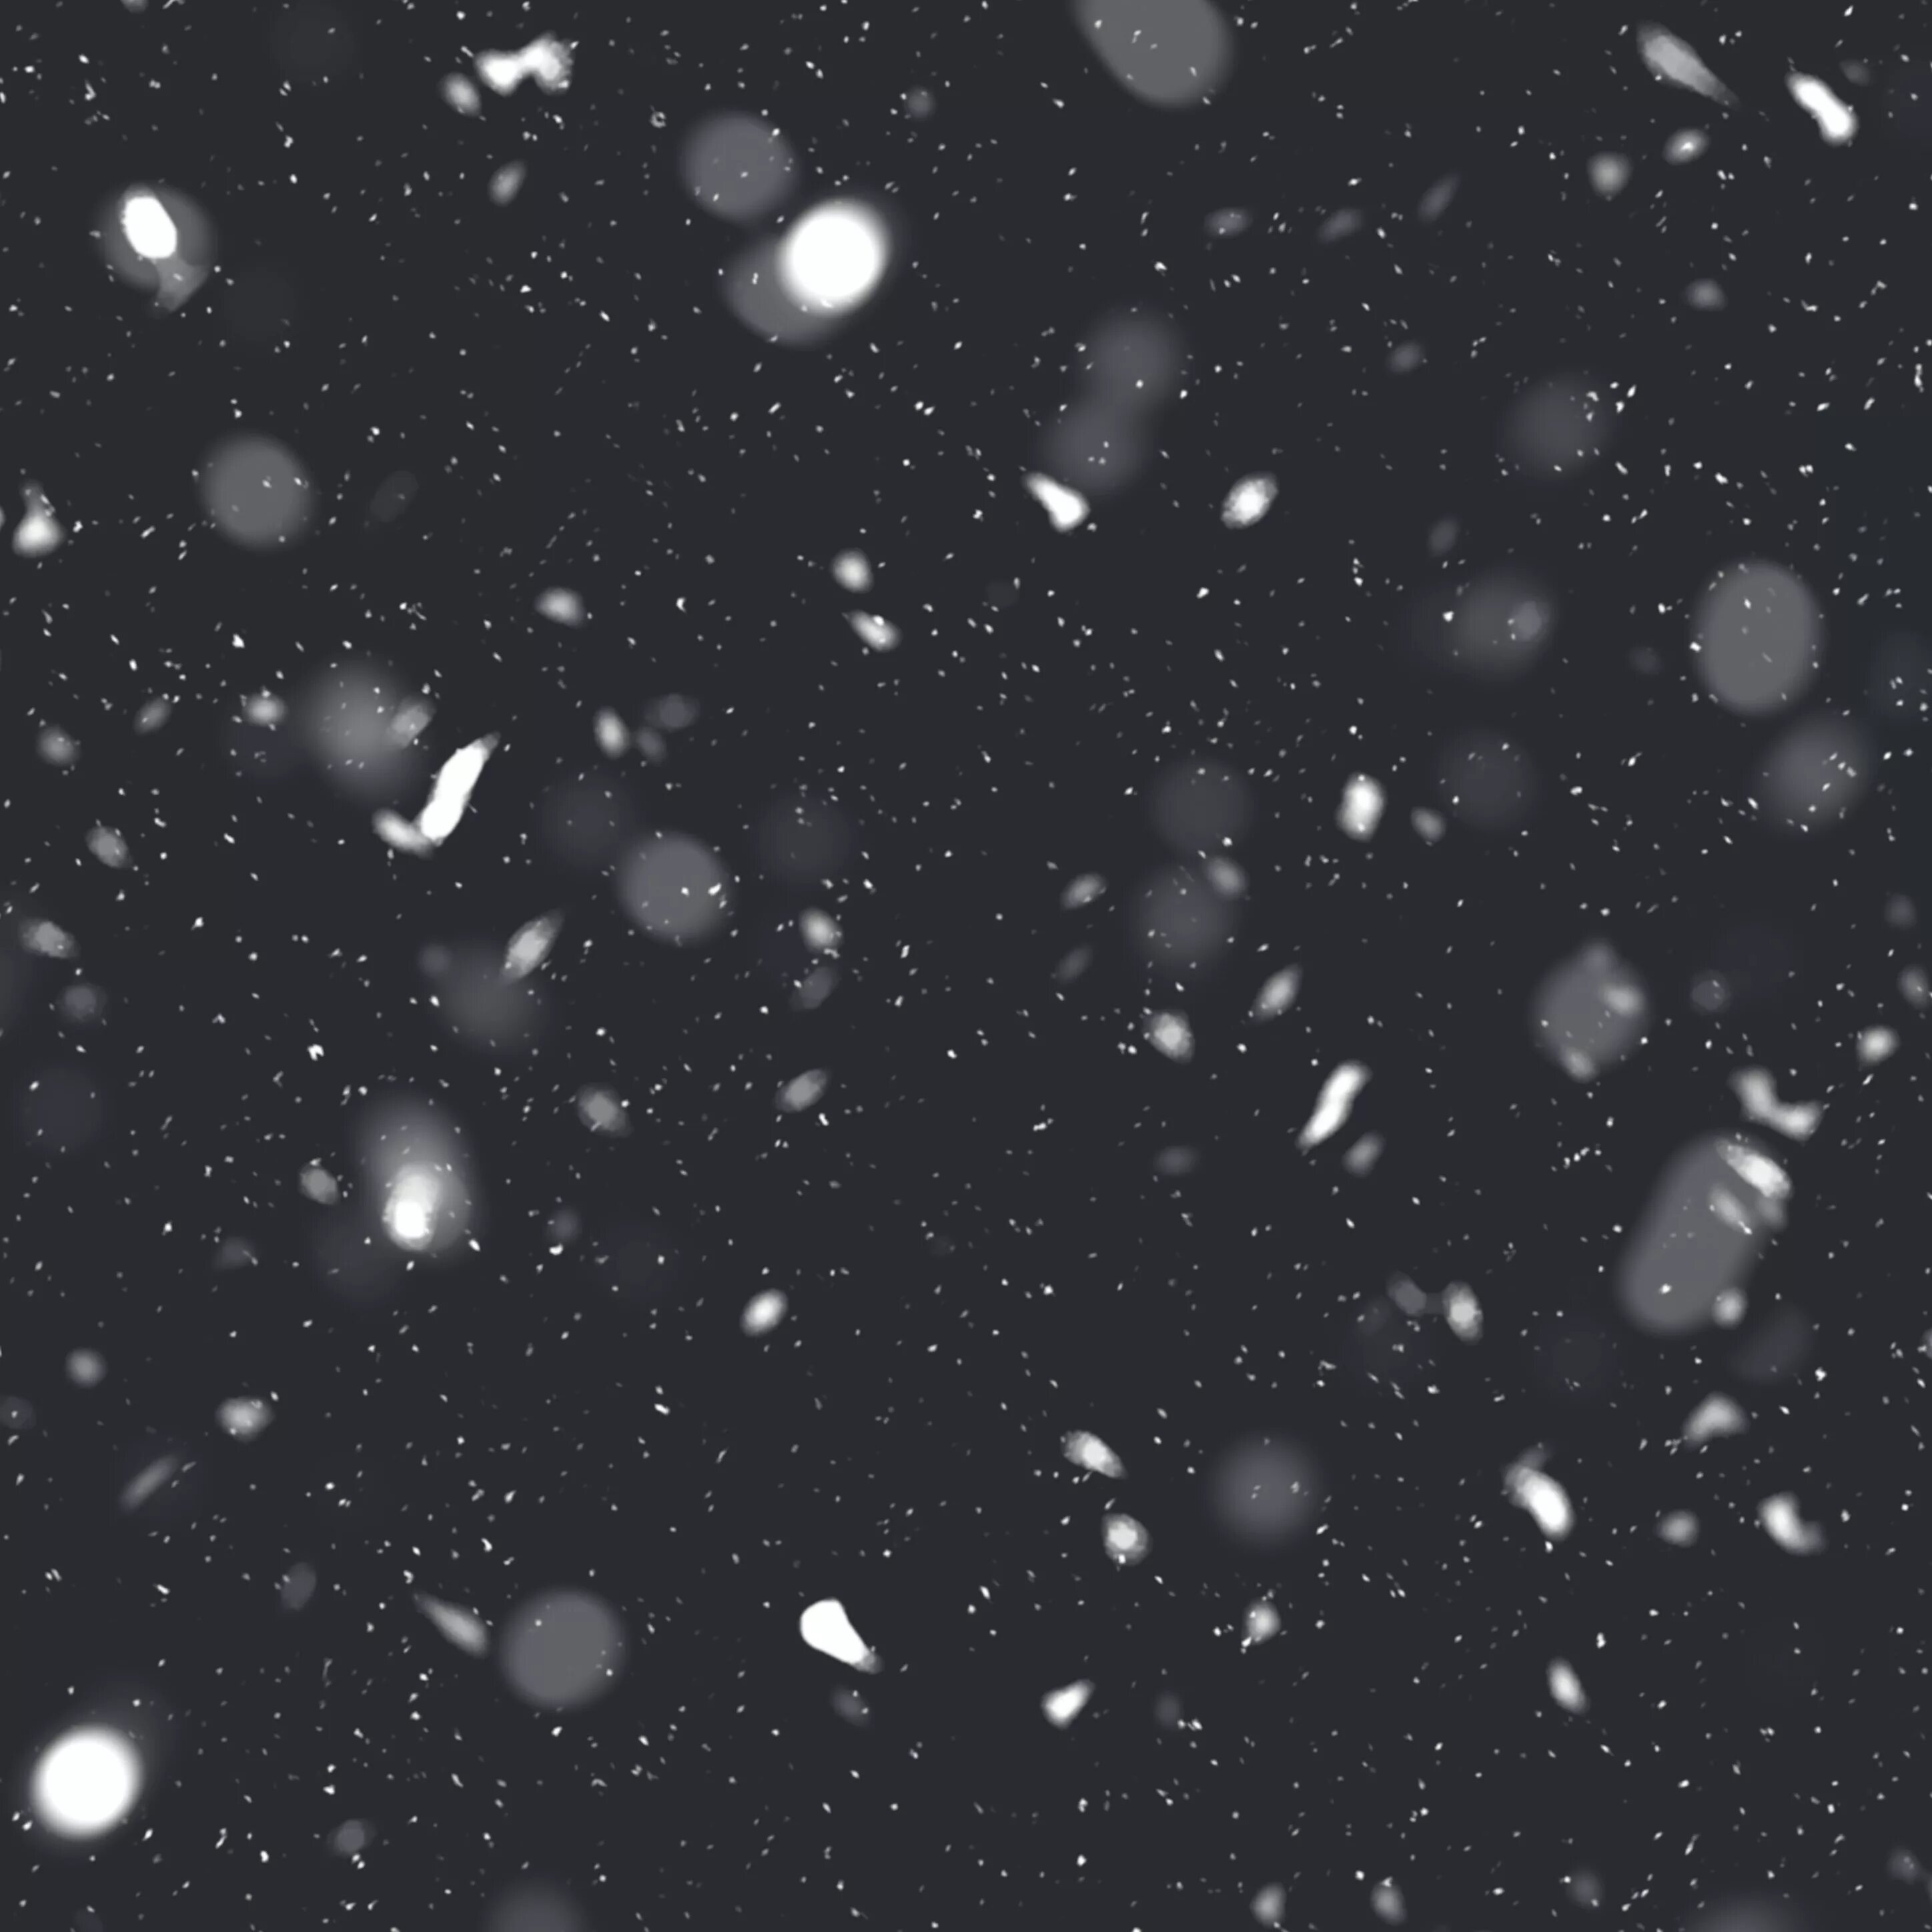 Снег для фотошопа. Хлопья снега для фотошопа. Эффект снега. Текстура снега для фотошопа. Мелкий снежок